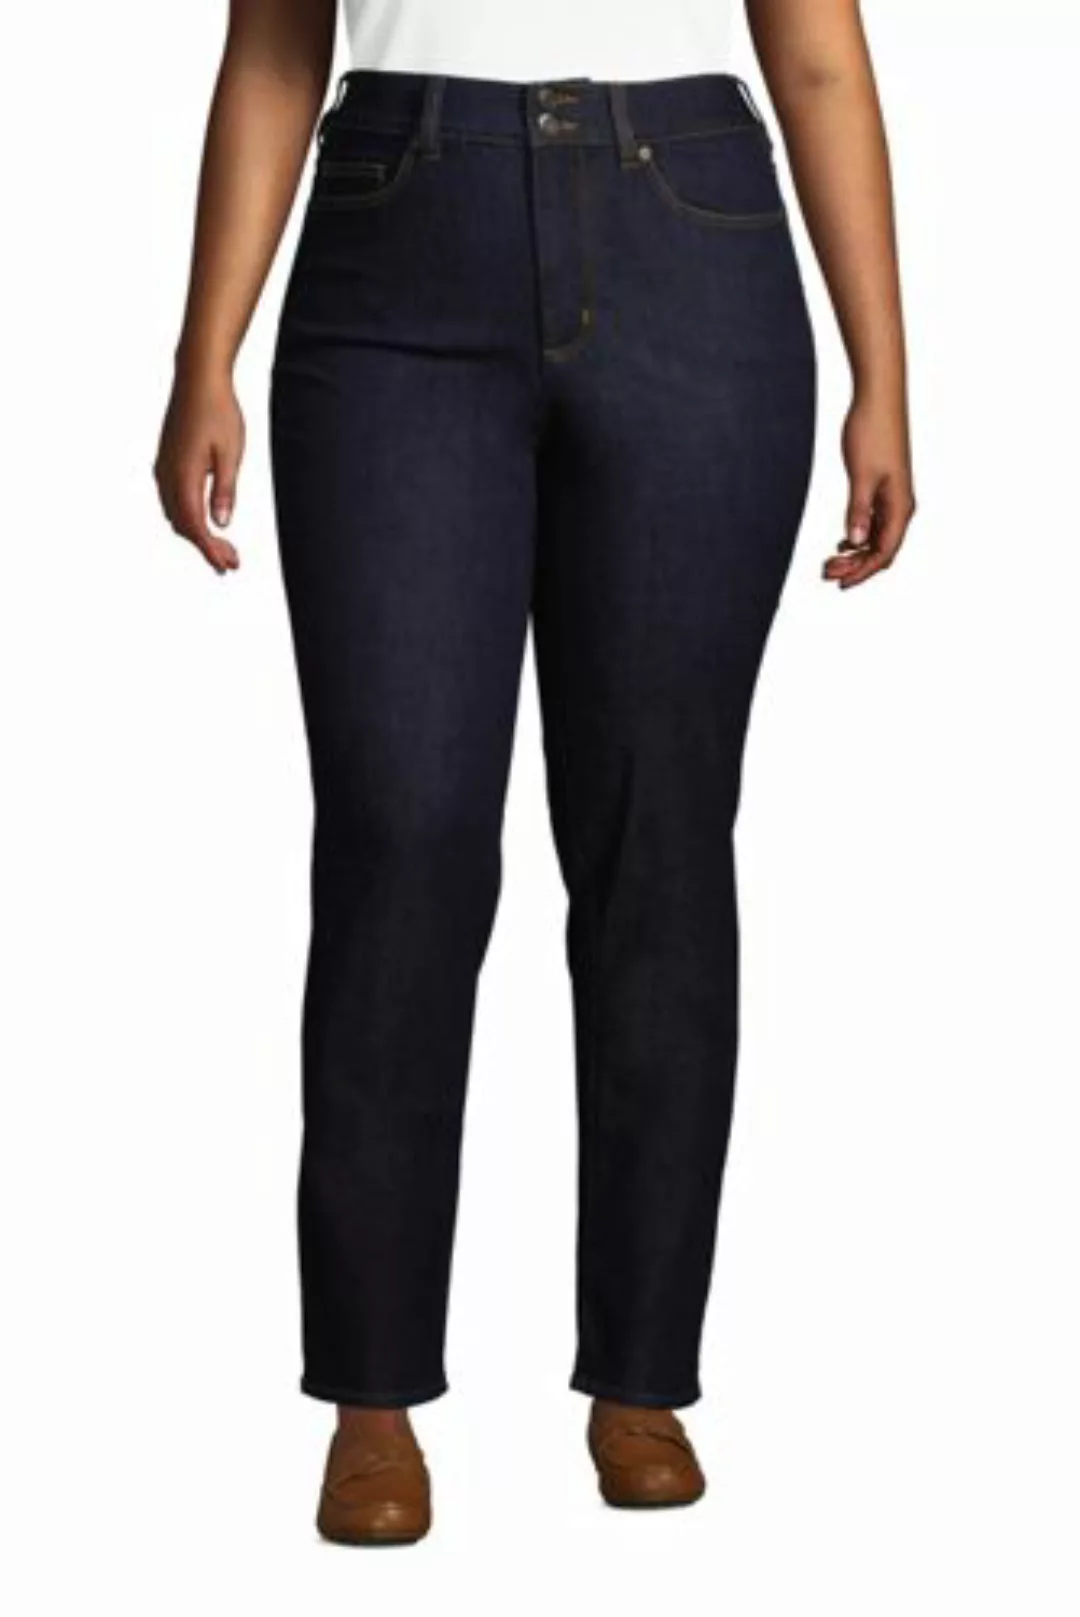 Shaping Jeans Straight Fit High Waist in großen Größen, Damen, Größe: 56 28 günstig online kaufen